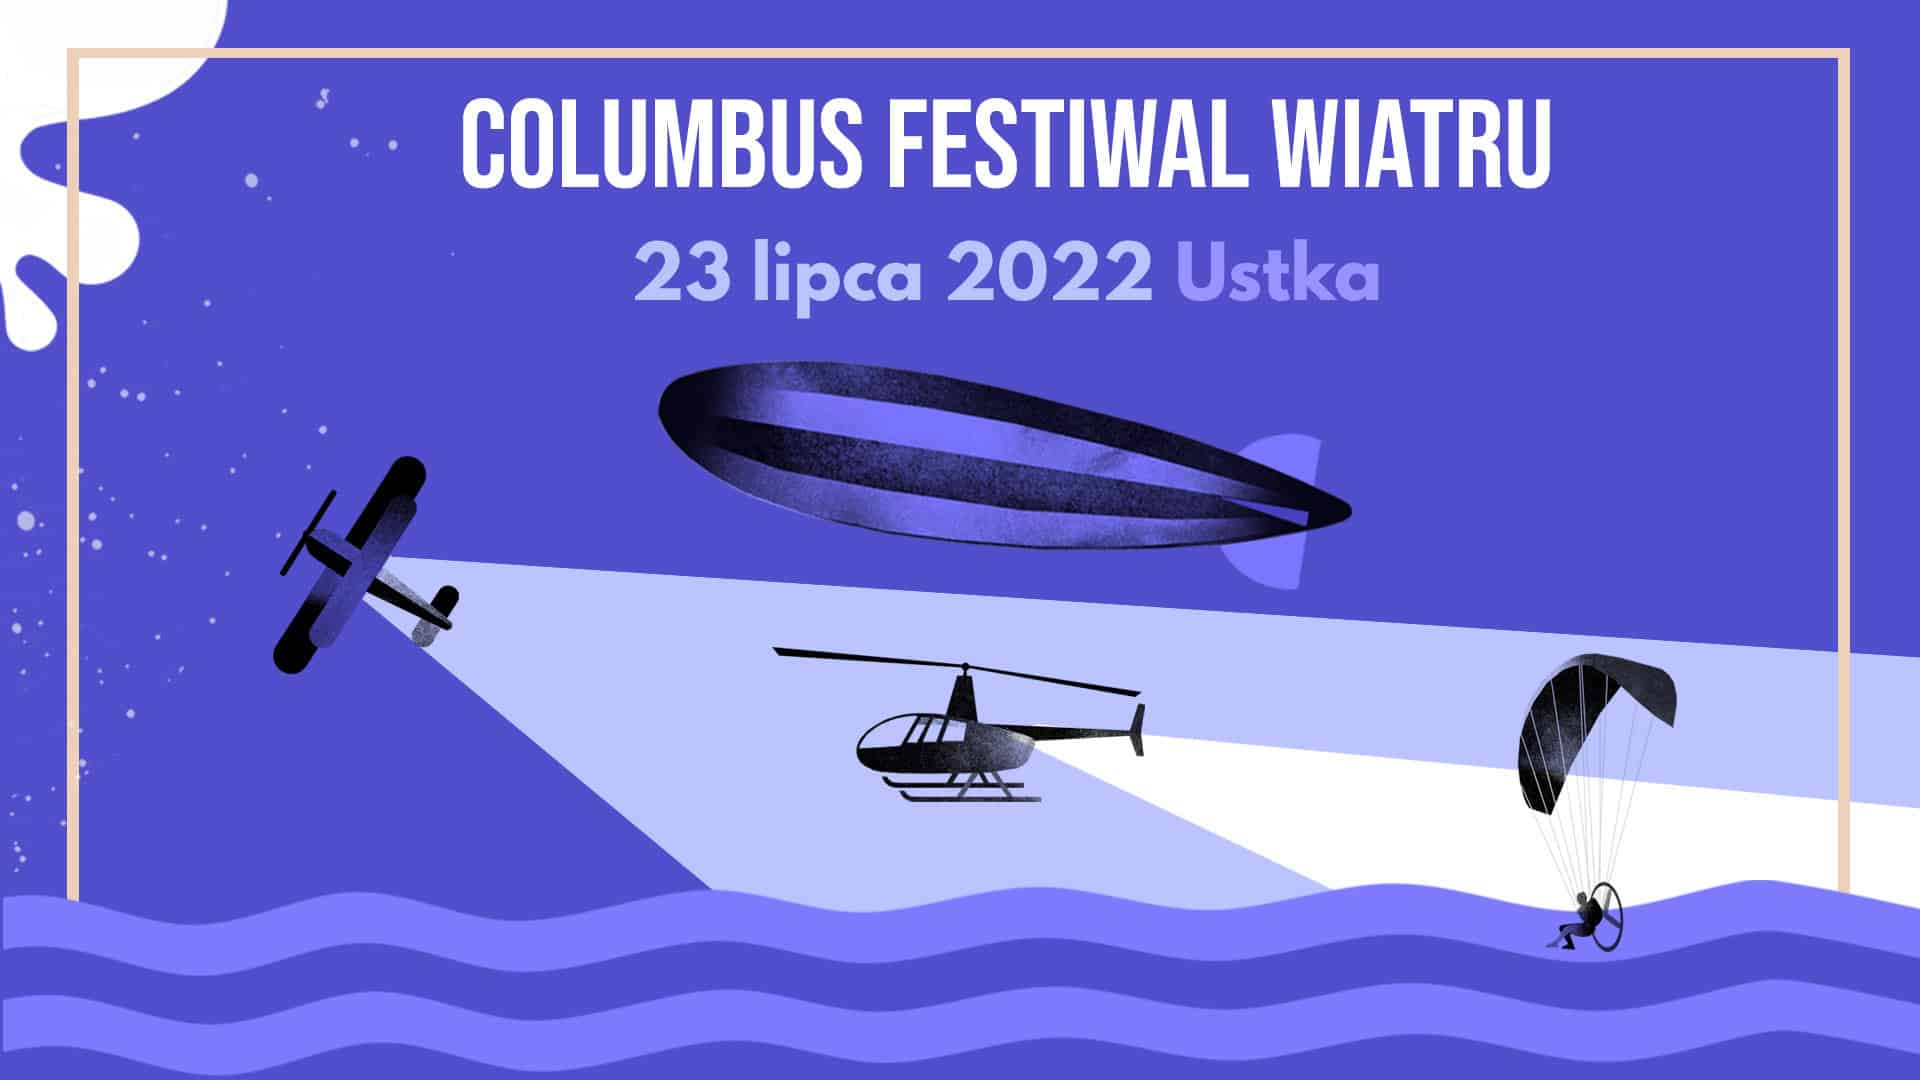 Columbus Festiwal Wiatru Ustka 2022